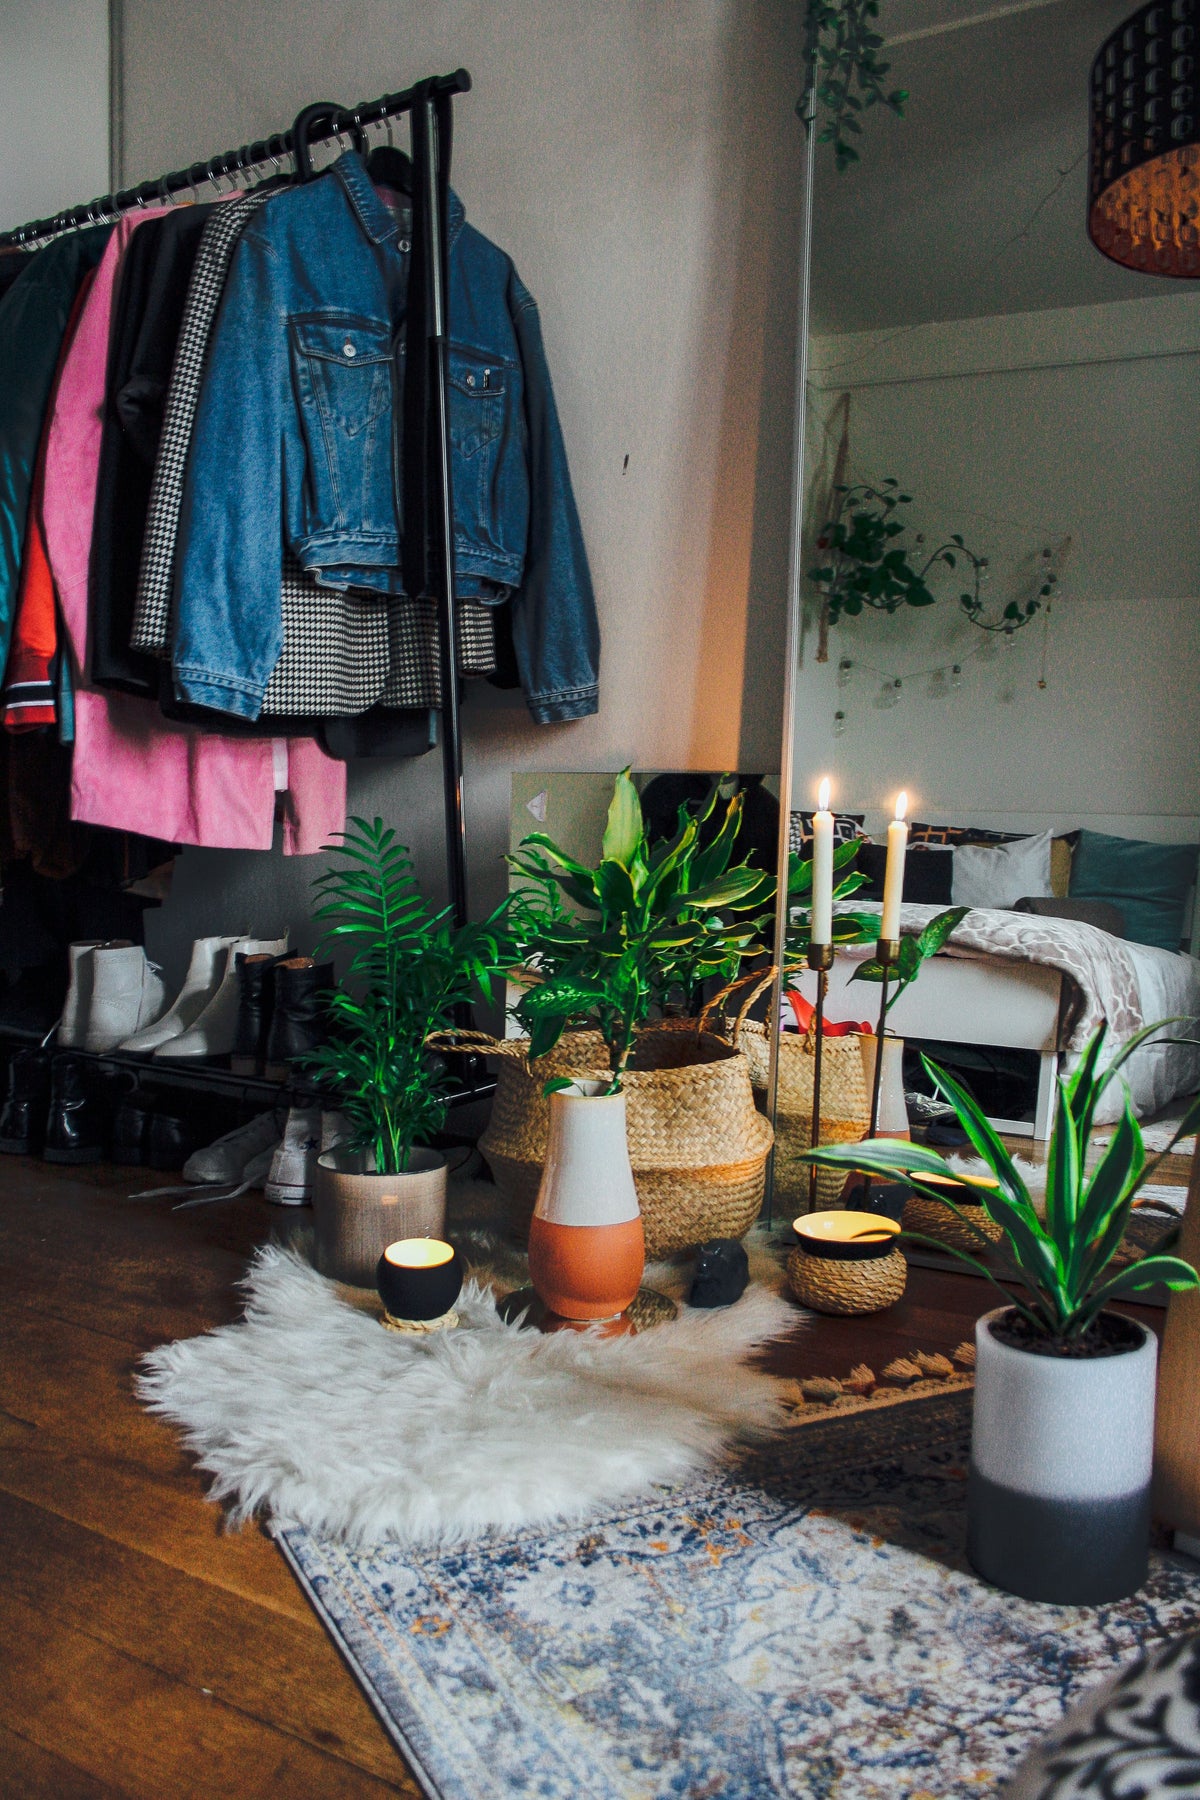 Ein buntes Zimmer mit vielen Pflanzen in verschiedenen Töpfen. Man sieht eine Kleiderstangeu nd zwei brennende Kerzen.